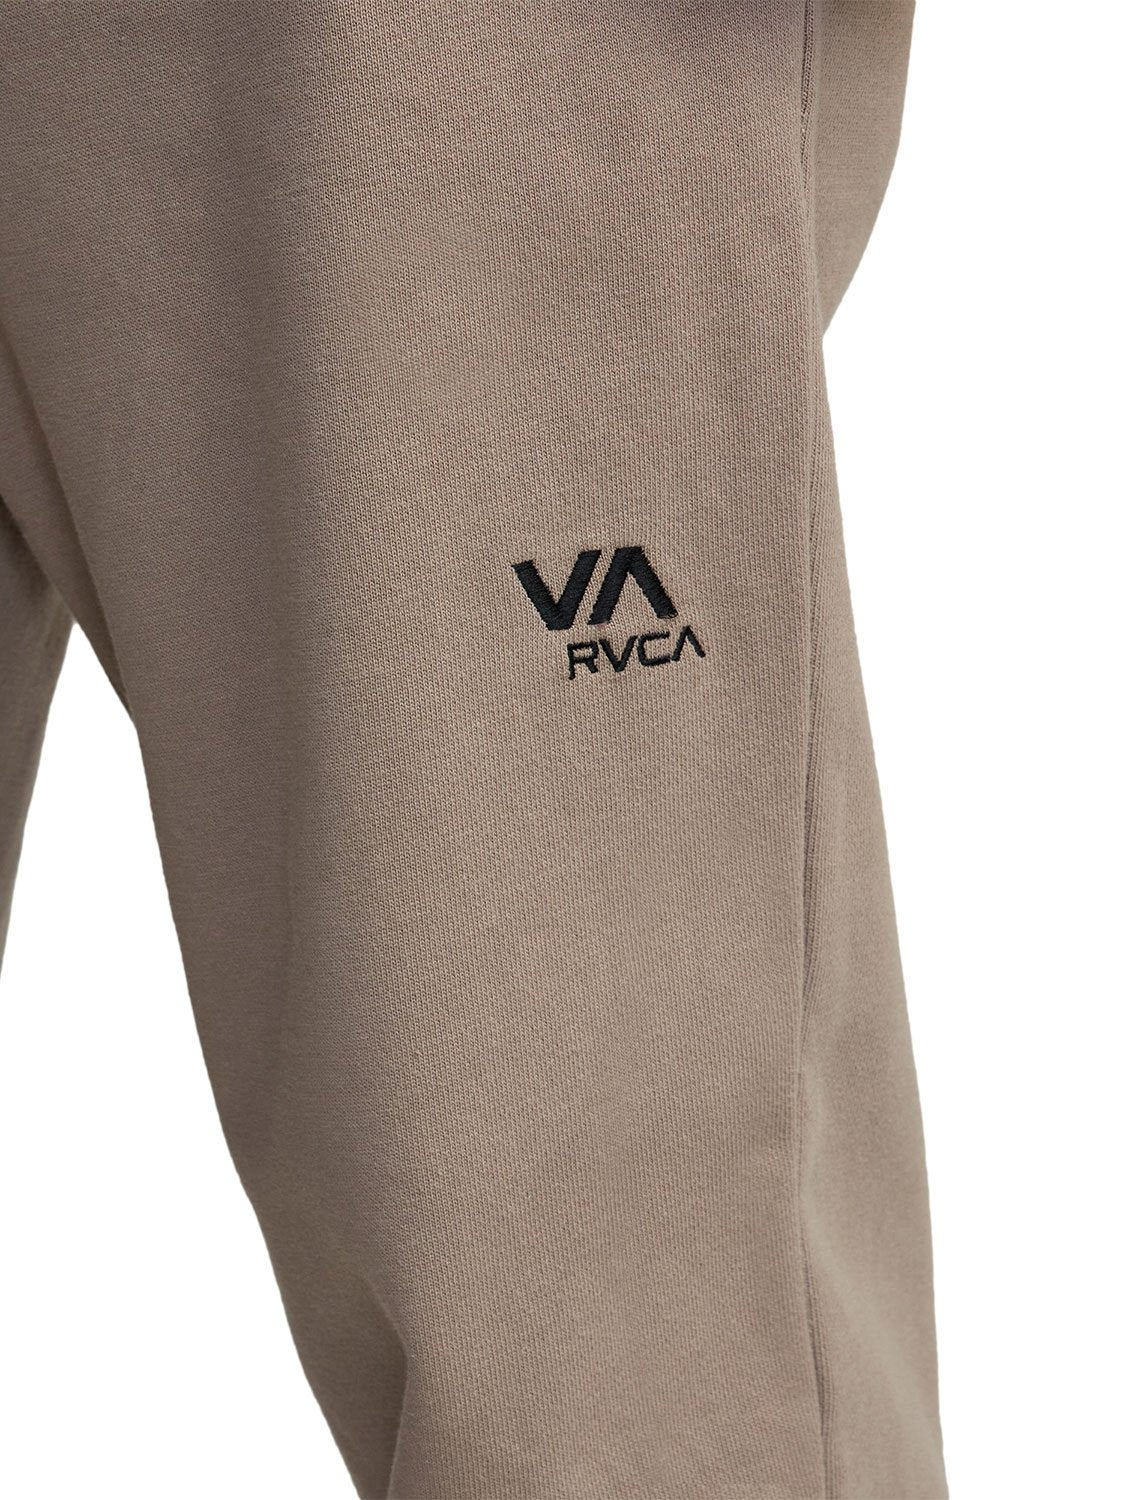 RVCA VA Essentials Sweatpant